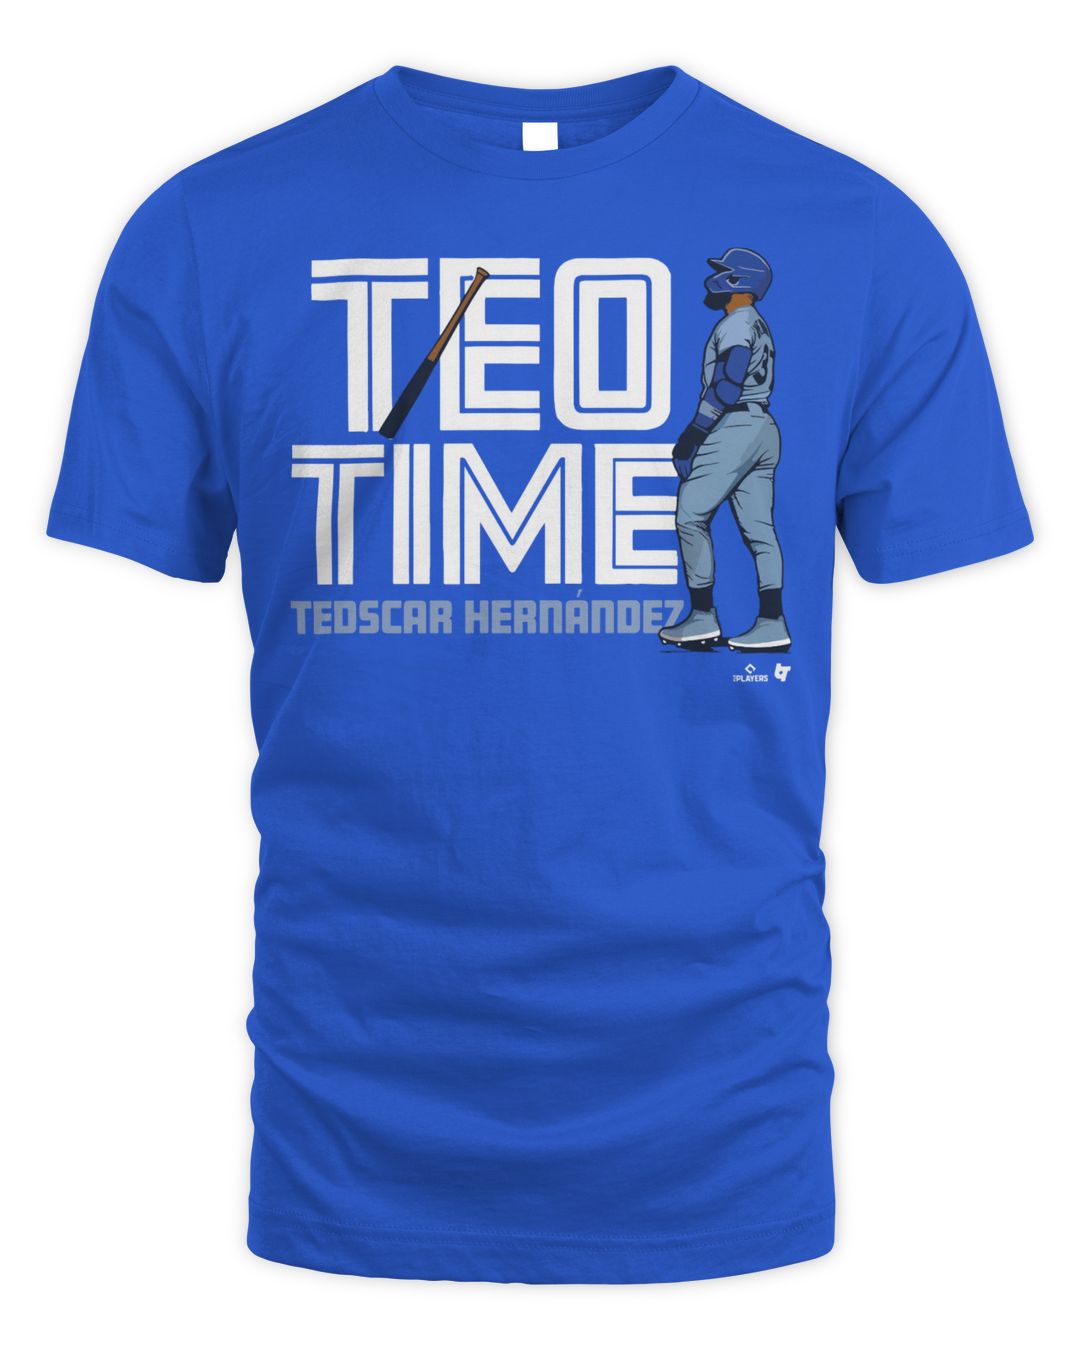 Teoscar Hernandez Teo Time Shirt